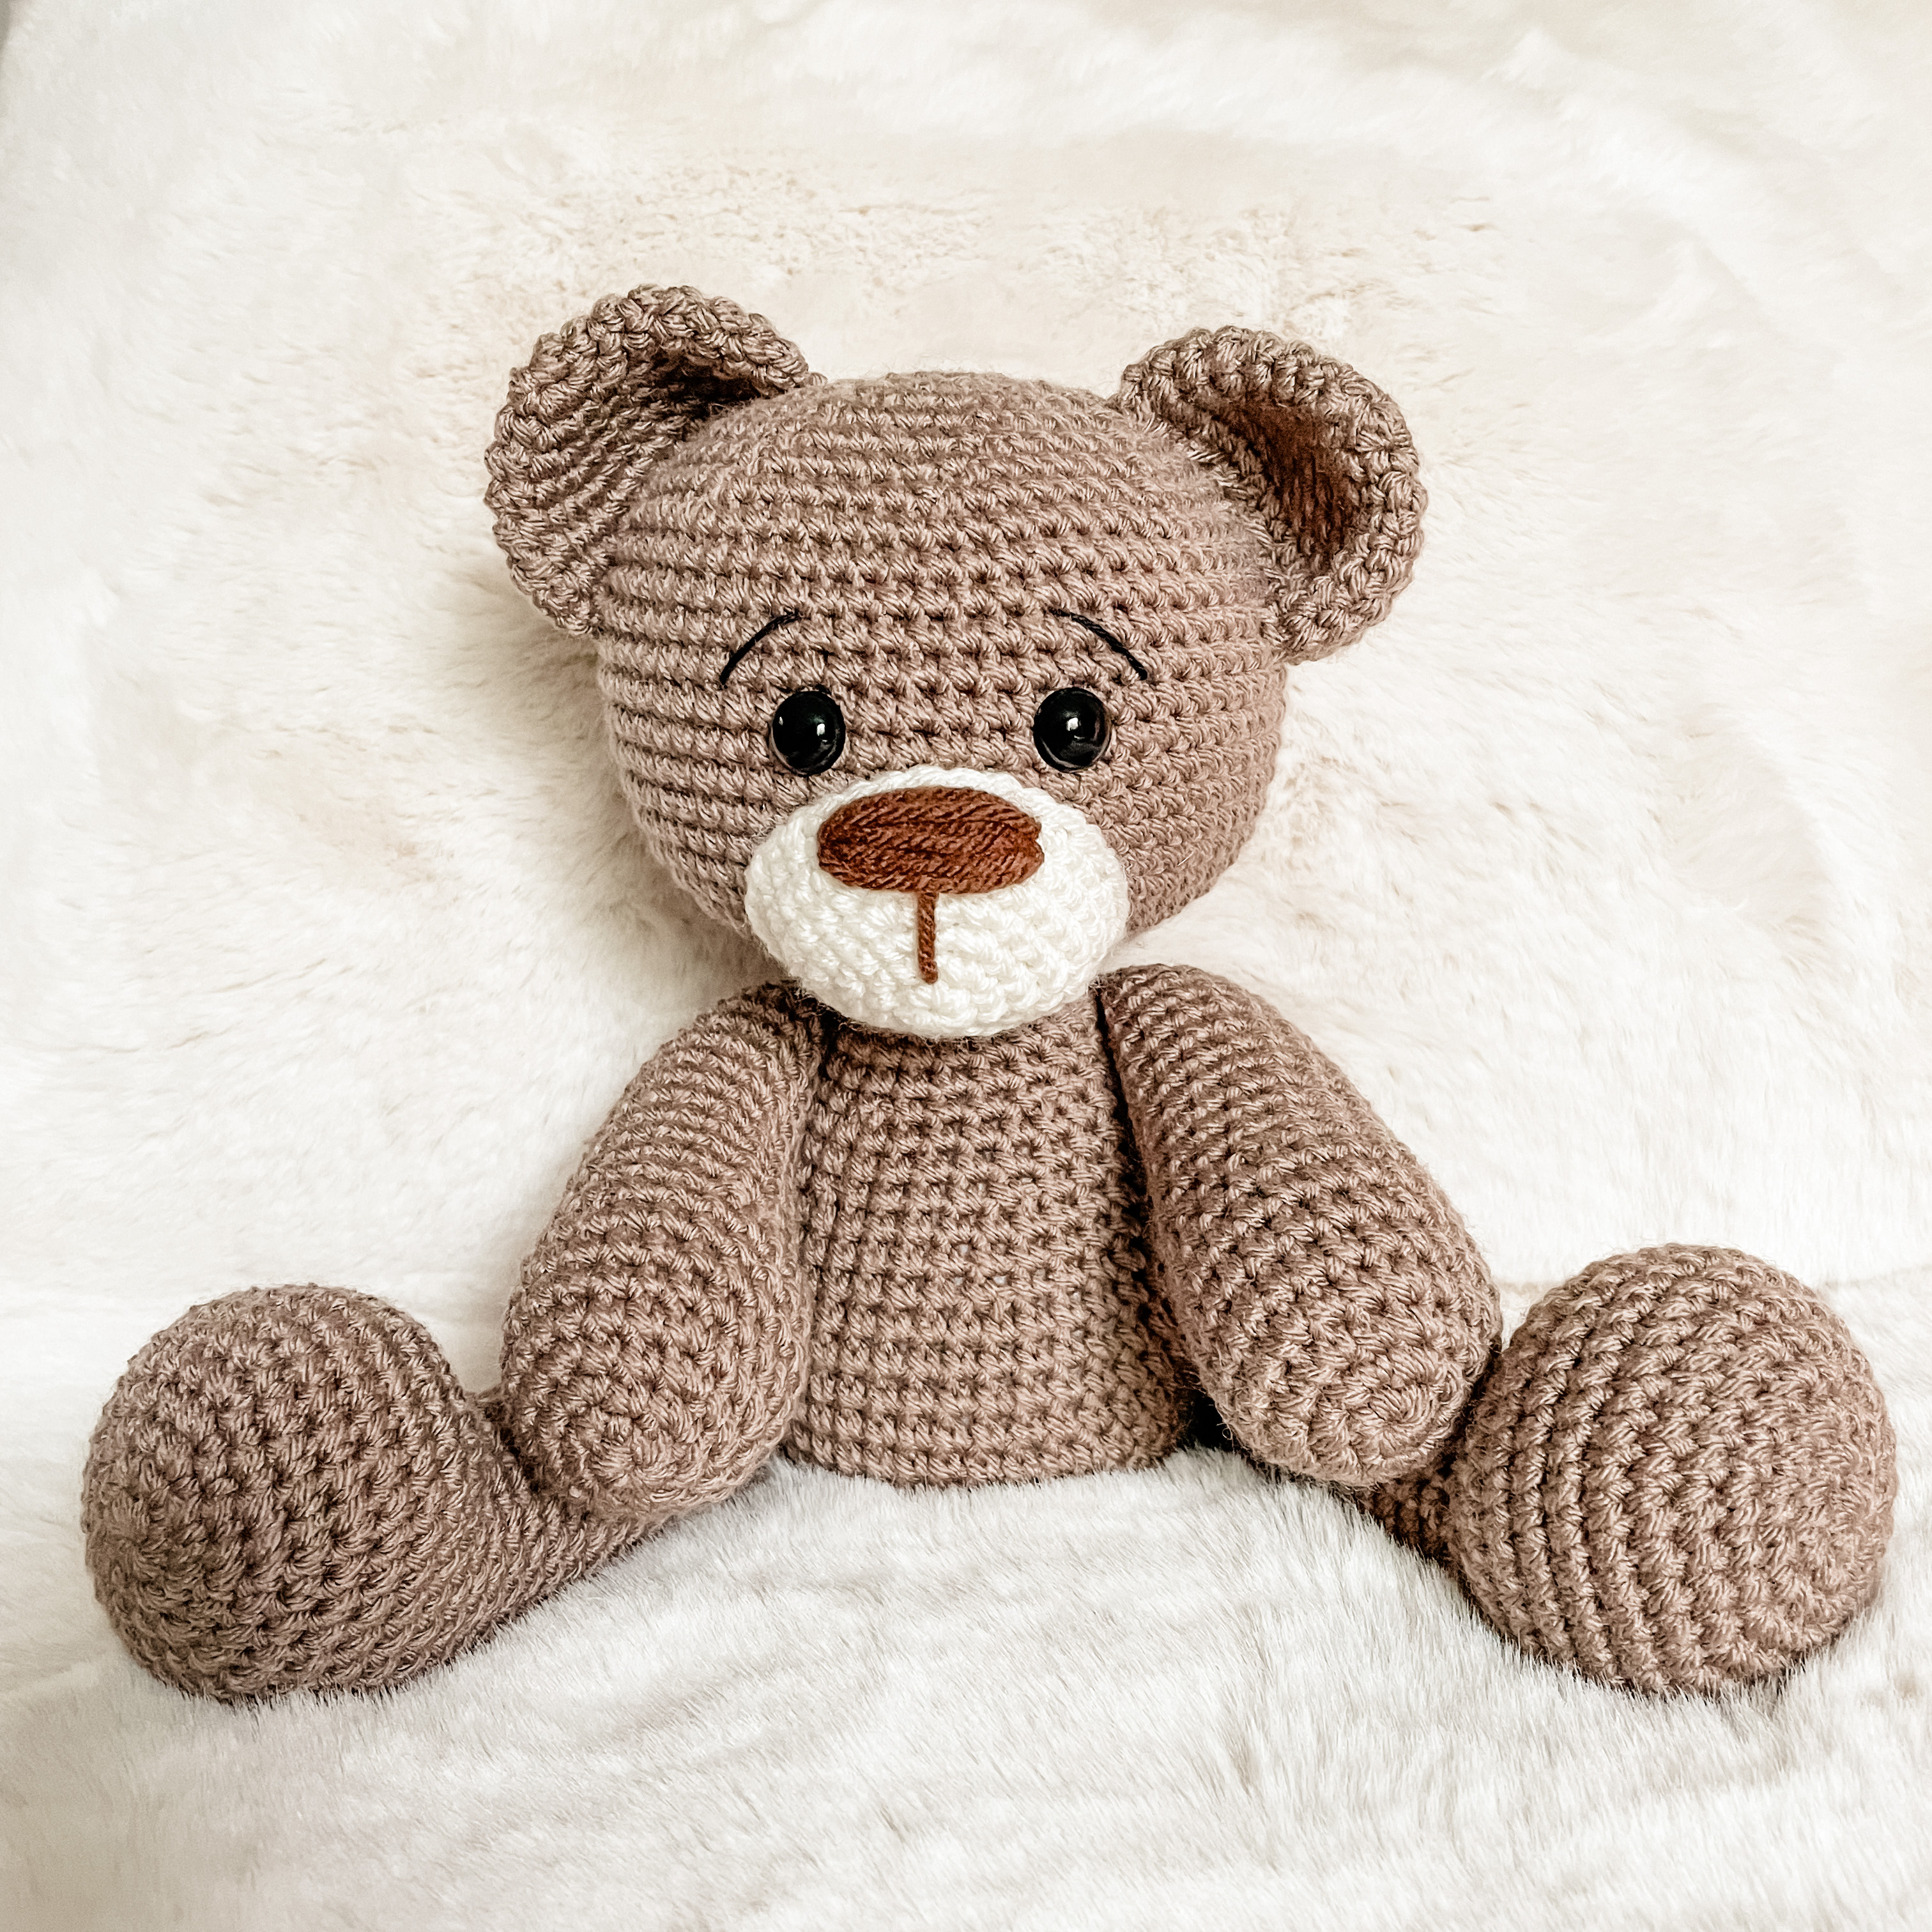 Crochet Teddy Bear- a free pattern